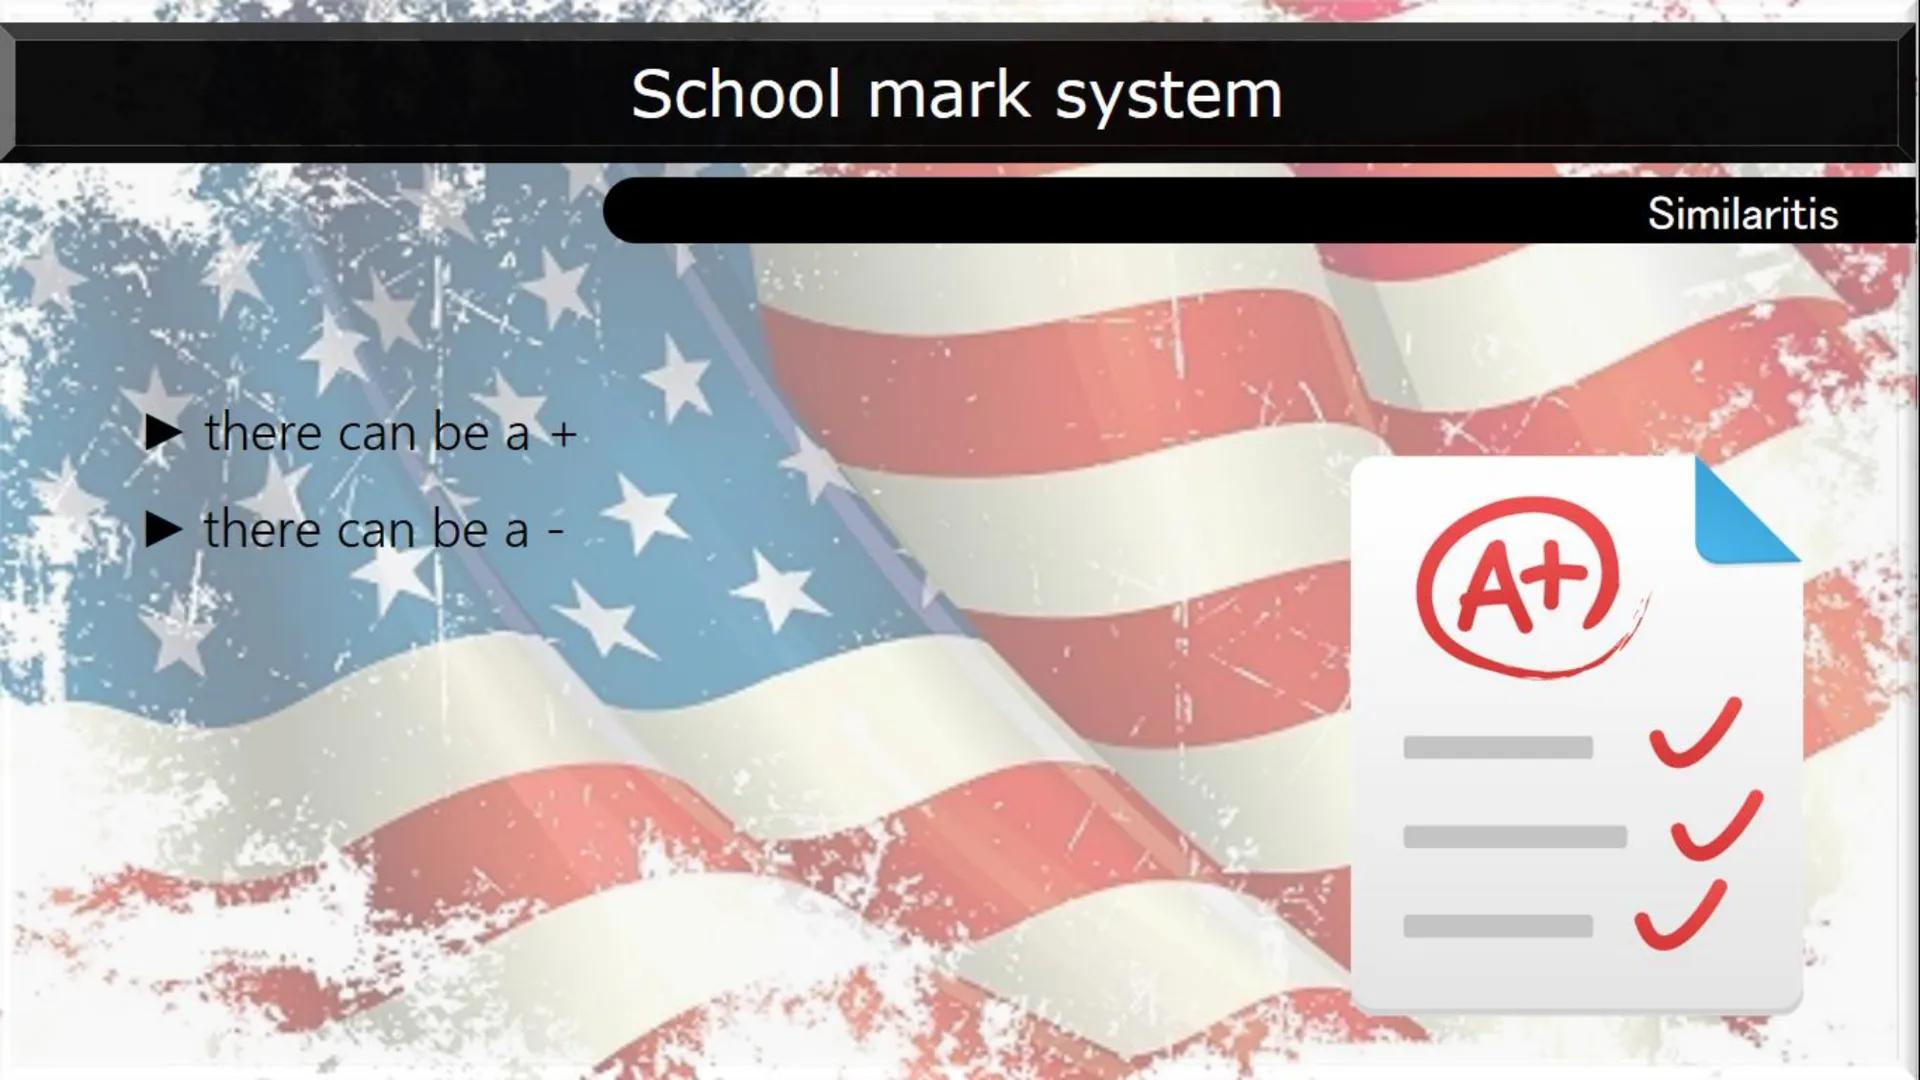 Types of school:
Many school types:
AMERICAN SCHOOL SYSTEM
A
B
Elementary school
Middle school
Junior High
High school
Mark system:
Marks fr